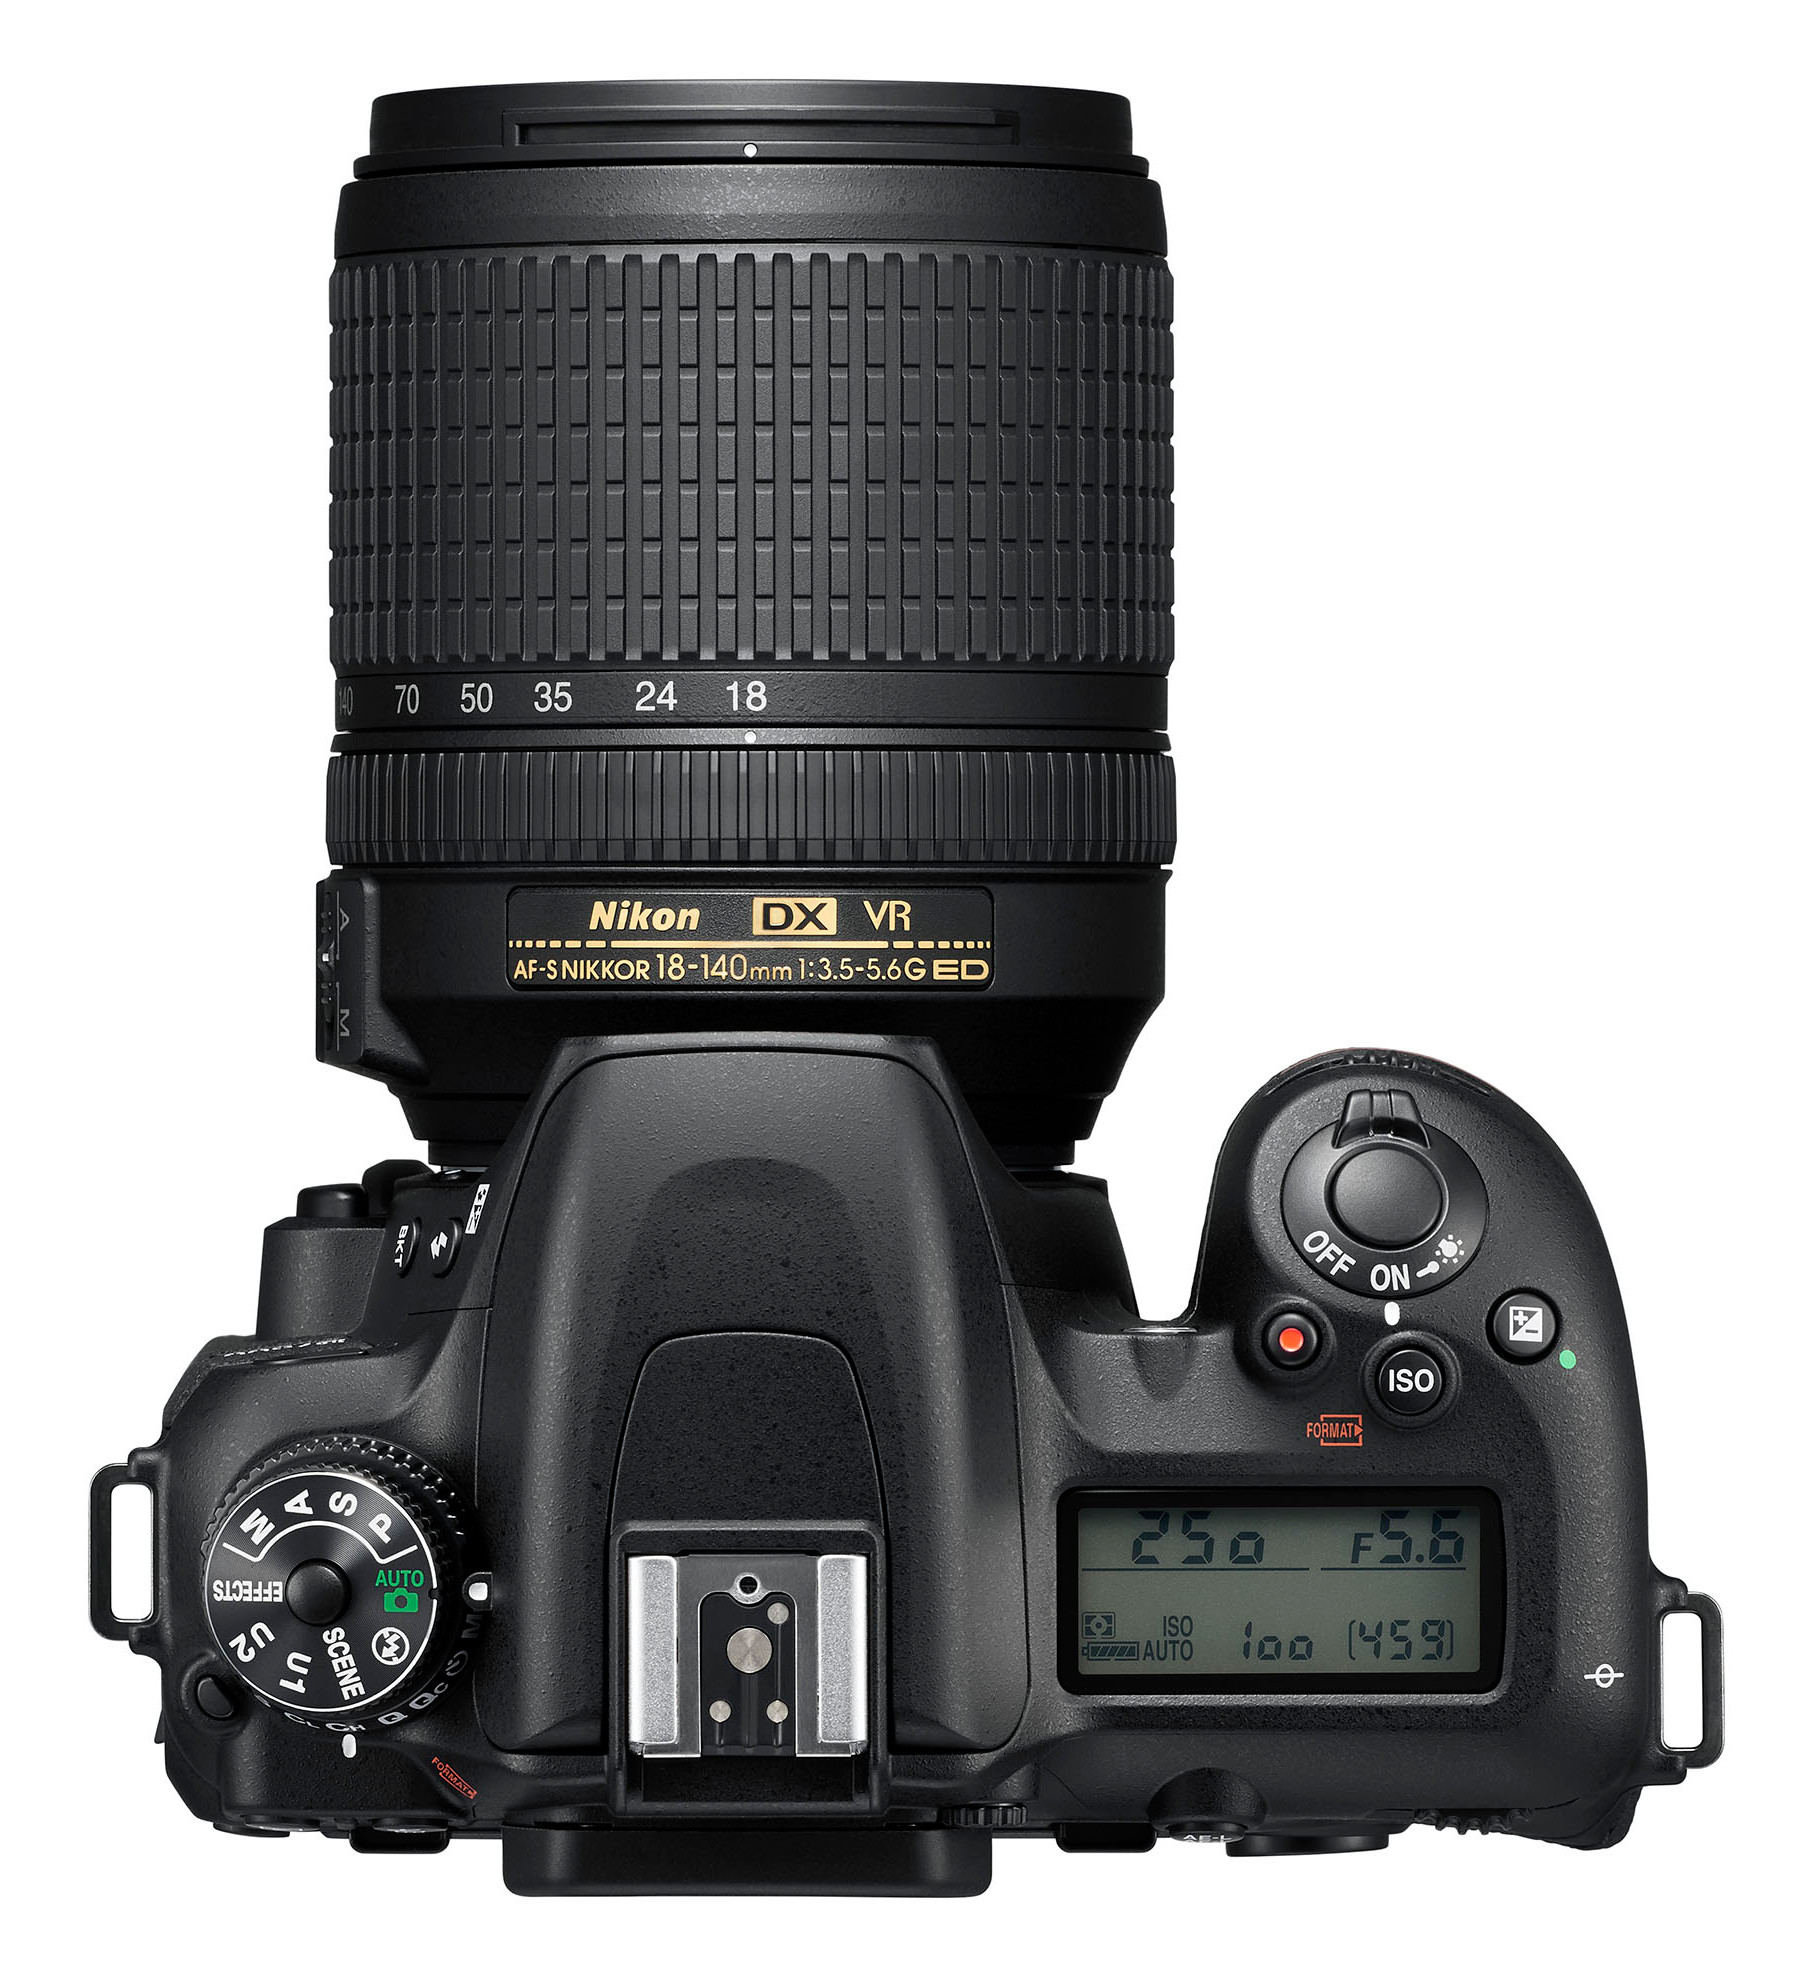 Nikon D7500 18-140mm Kit 20.9MP DSLR Camera with AF-S DX NIKKOR 18